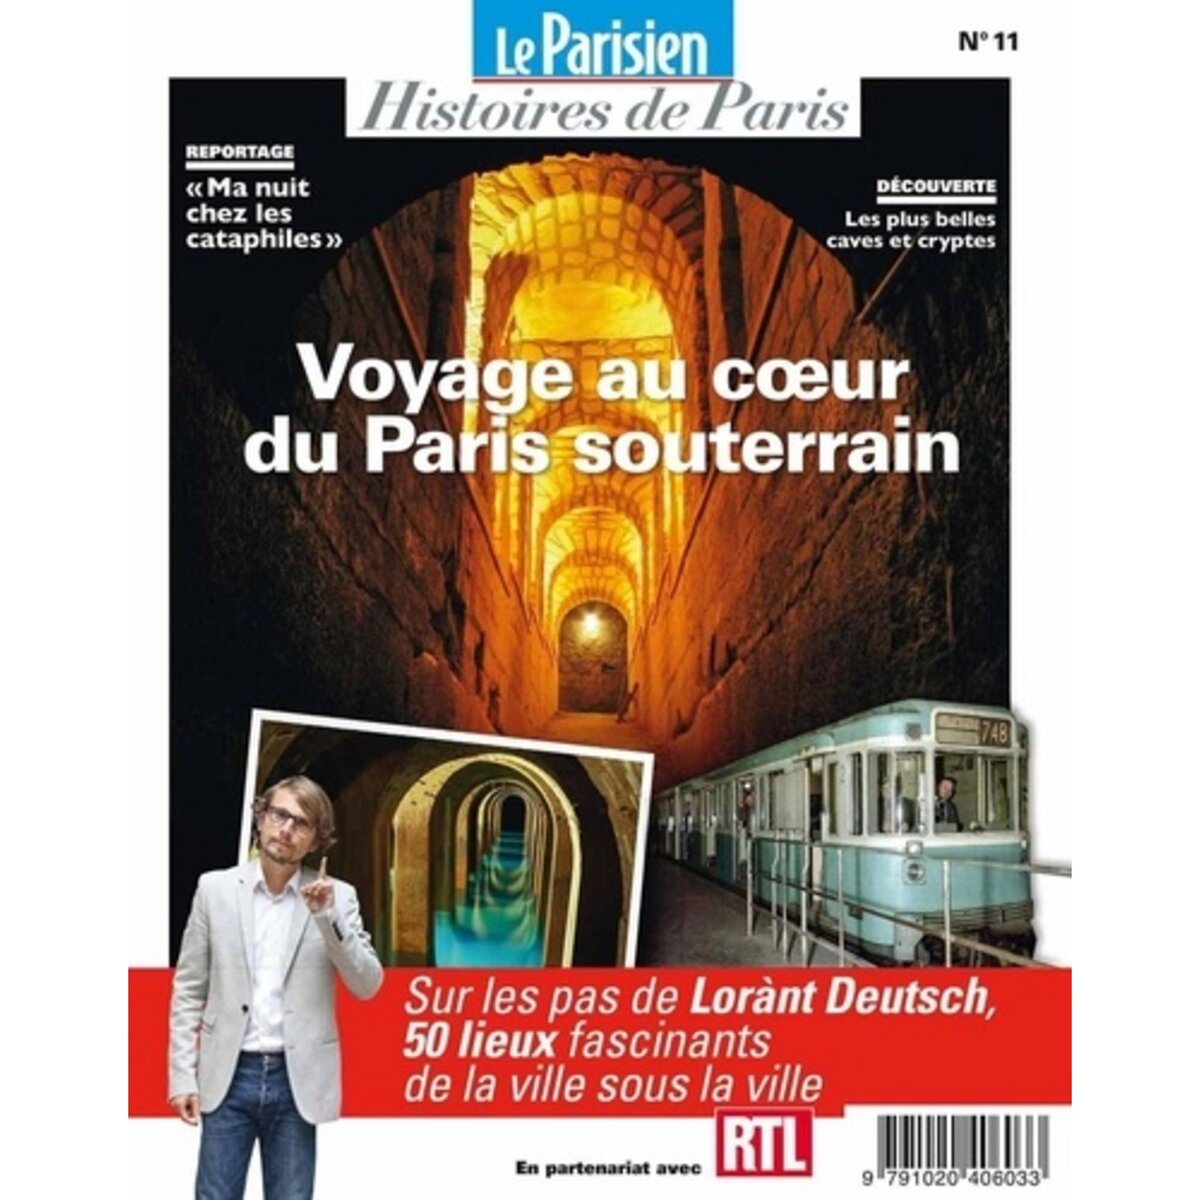  Le Parisien Histoires de Paris N° 11, avril 2020 : Voyage au coeur du Paris souterrain, Pic Rafael